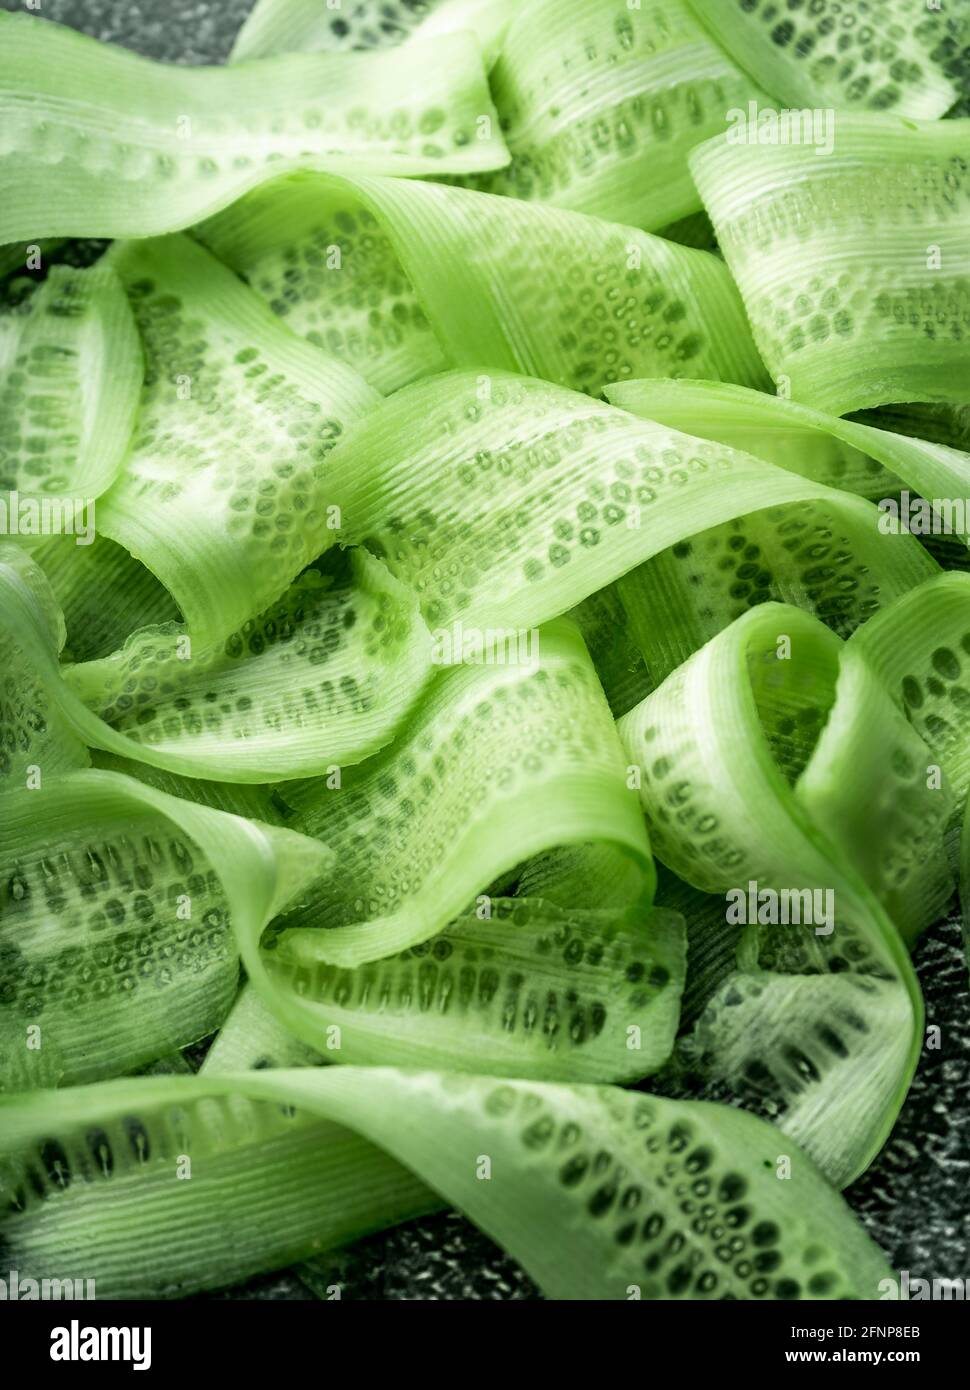 arrière-plan alimentaire. tranches fines de concombre vert frais. sur fond sombre, couleur vert riche. vue de dessus, macro Banque D'Images